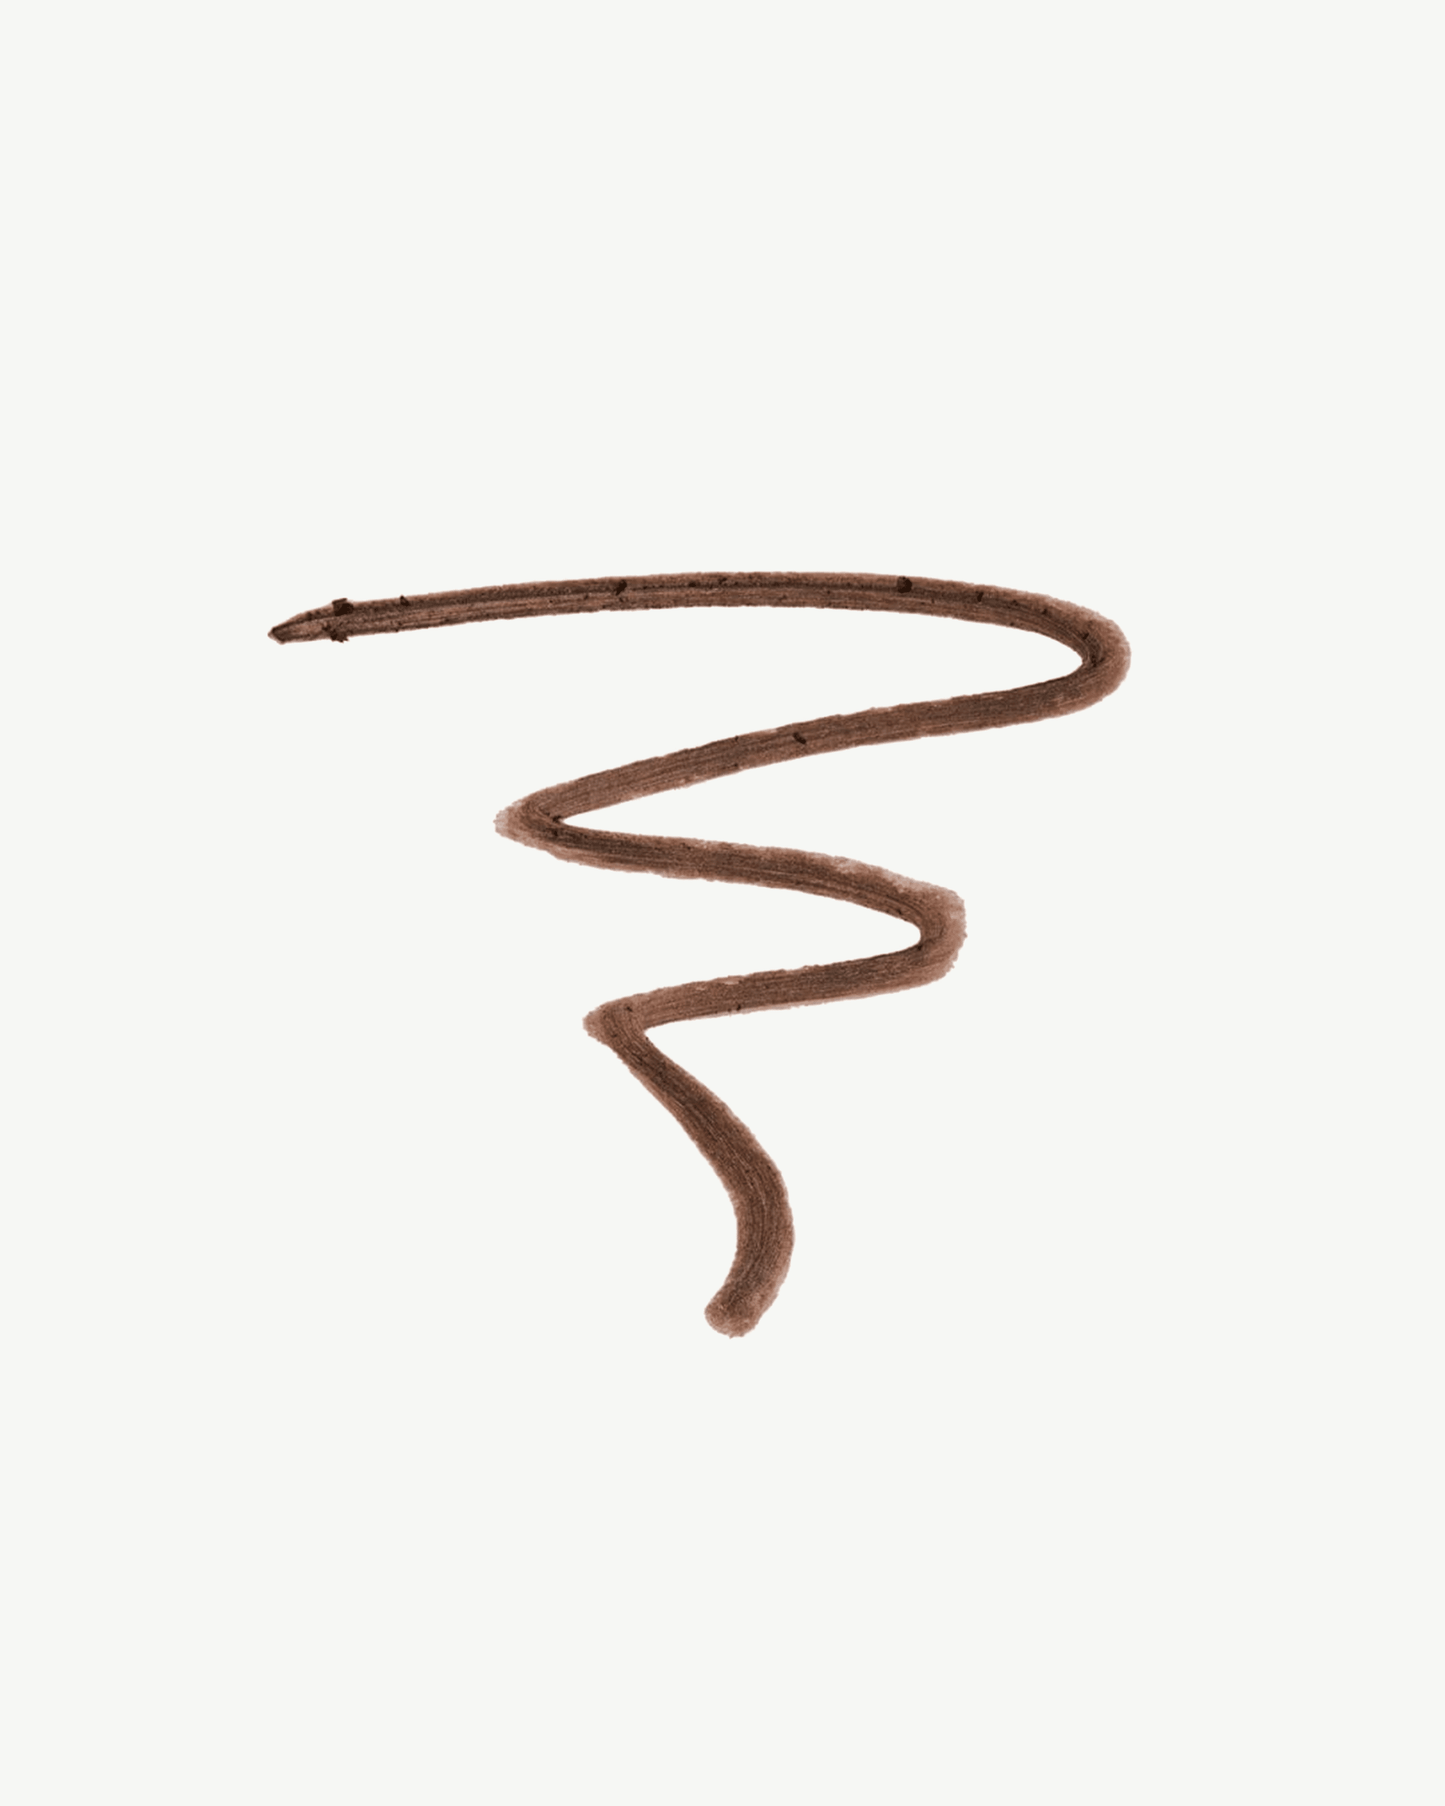 Medium (muted, medium warm brown ideal for brown/auburn hair)